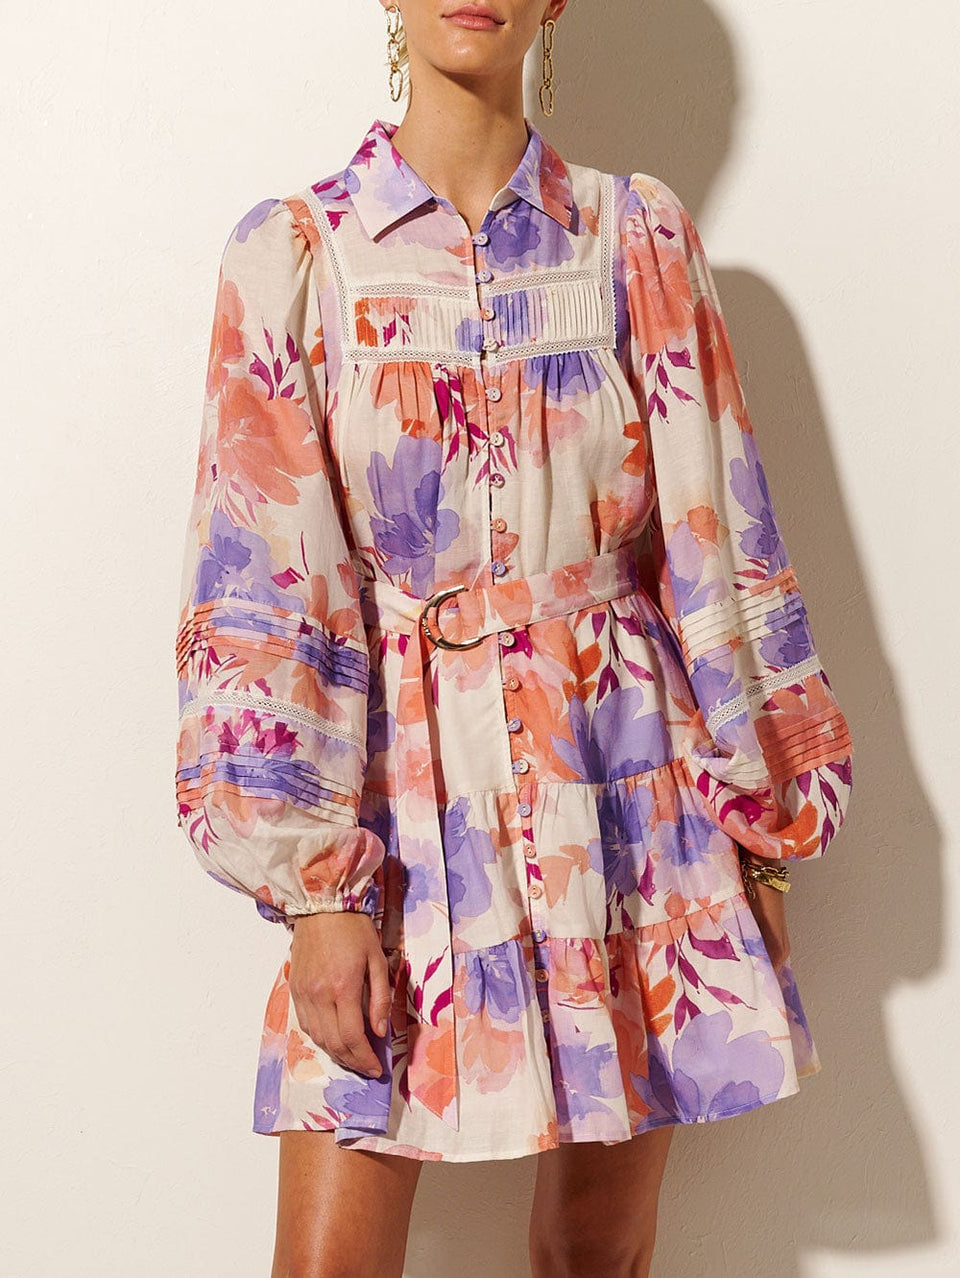 Johannes Mini Dress KIVARI | Model wears floral mini dress